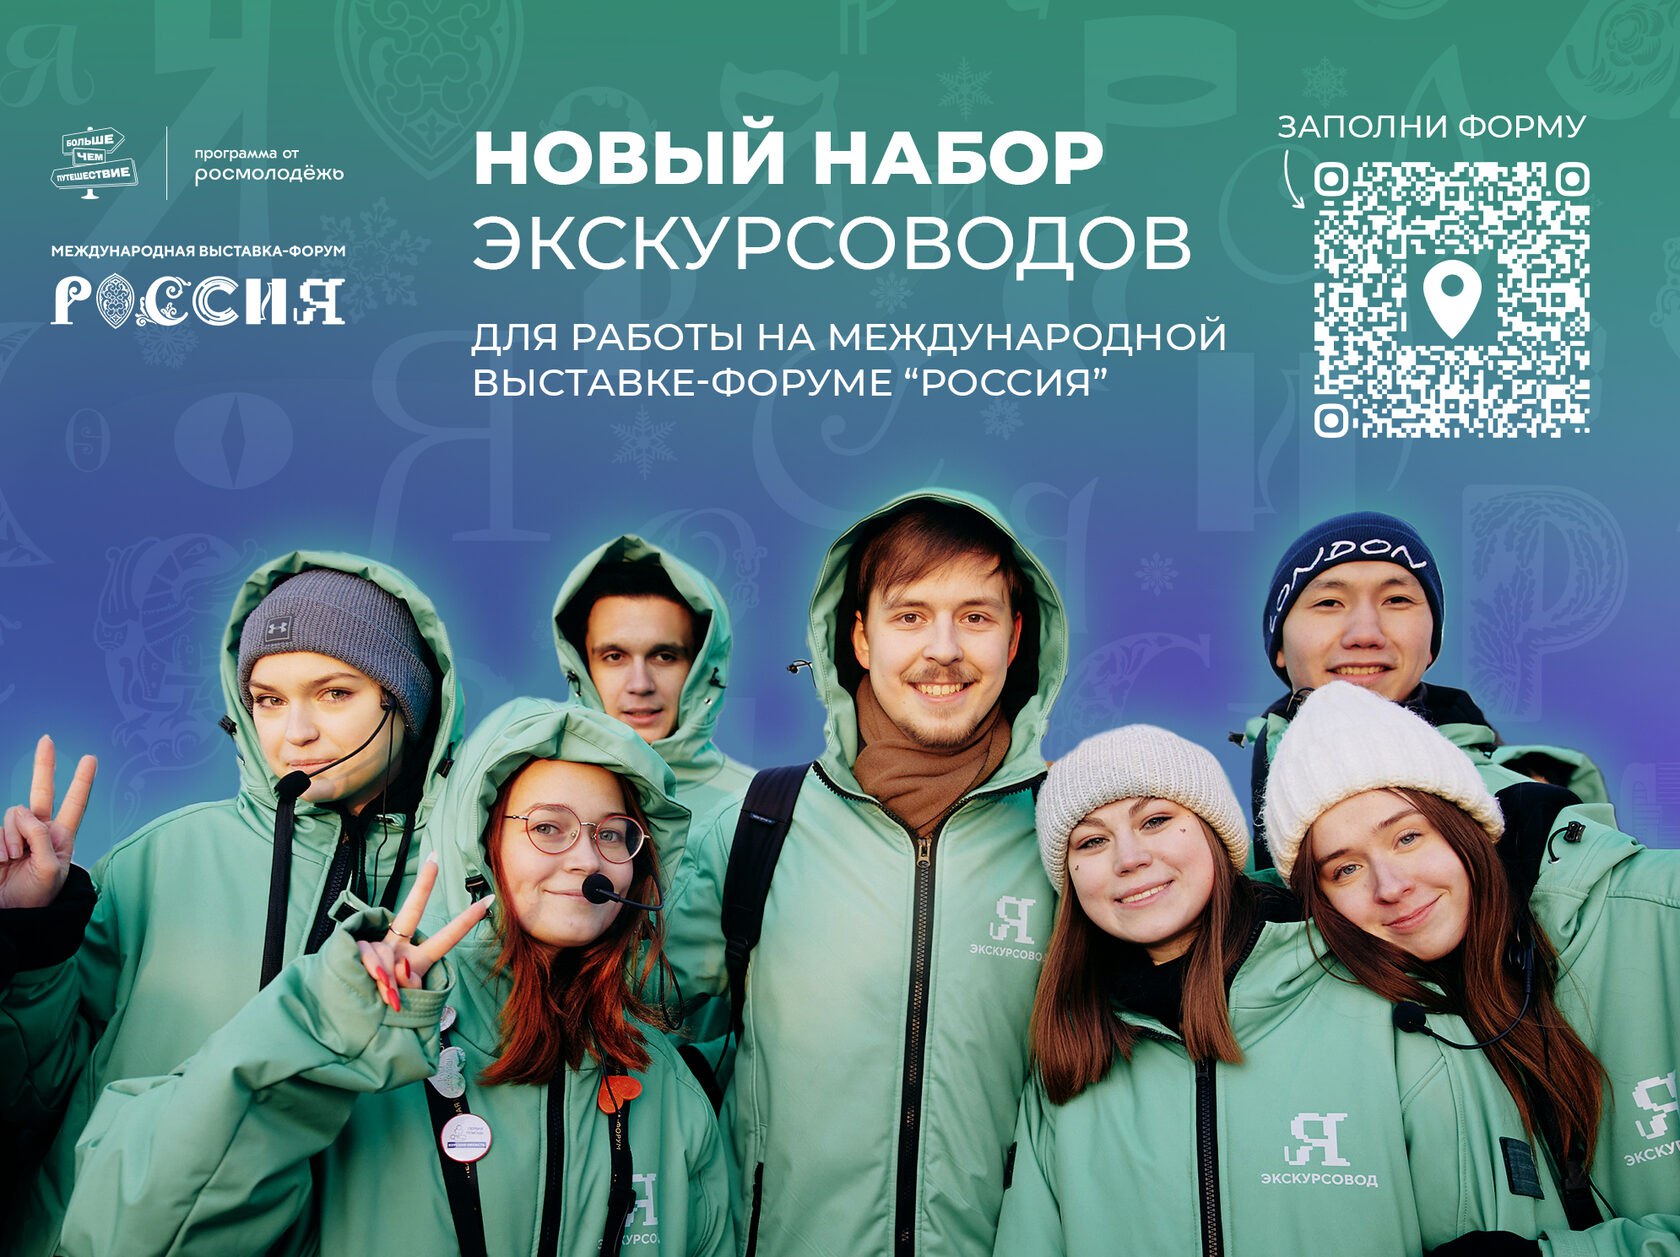 Фото В Бурятии идет новый набор экскурсоводов на выставку-форум «Россия»